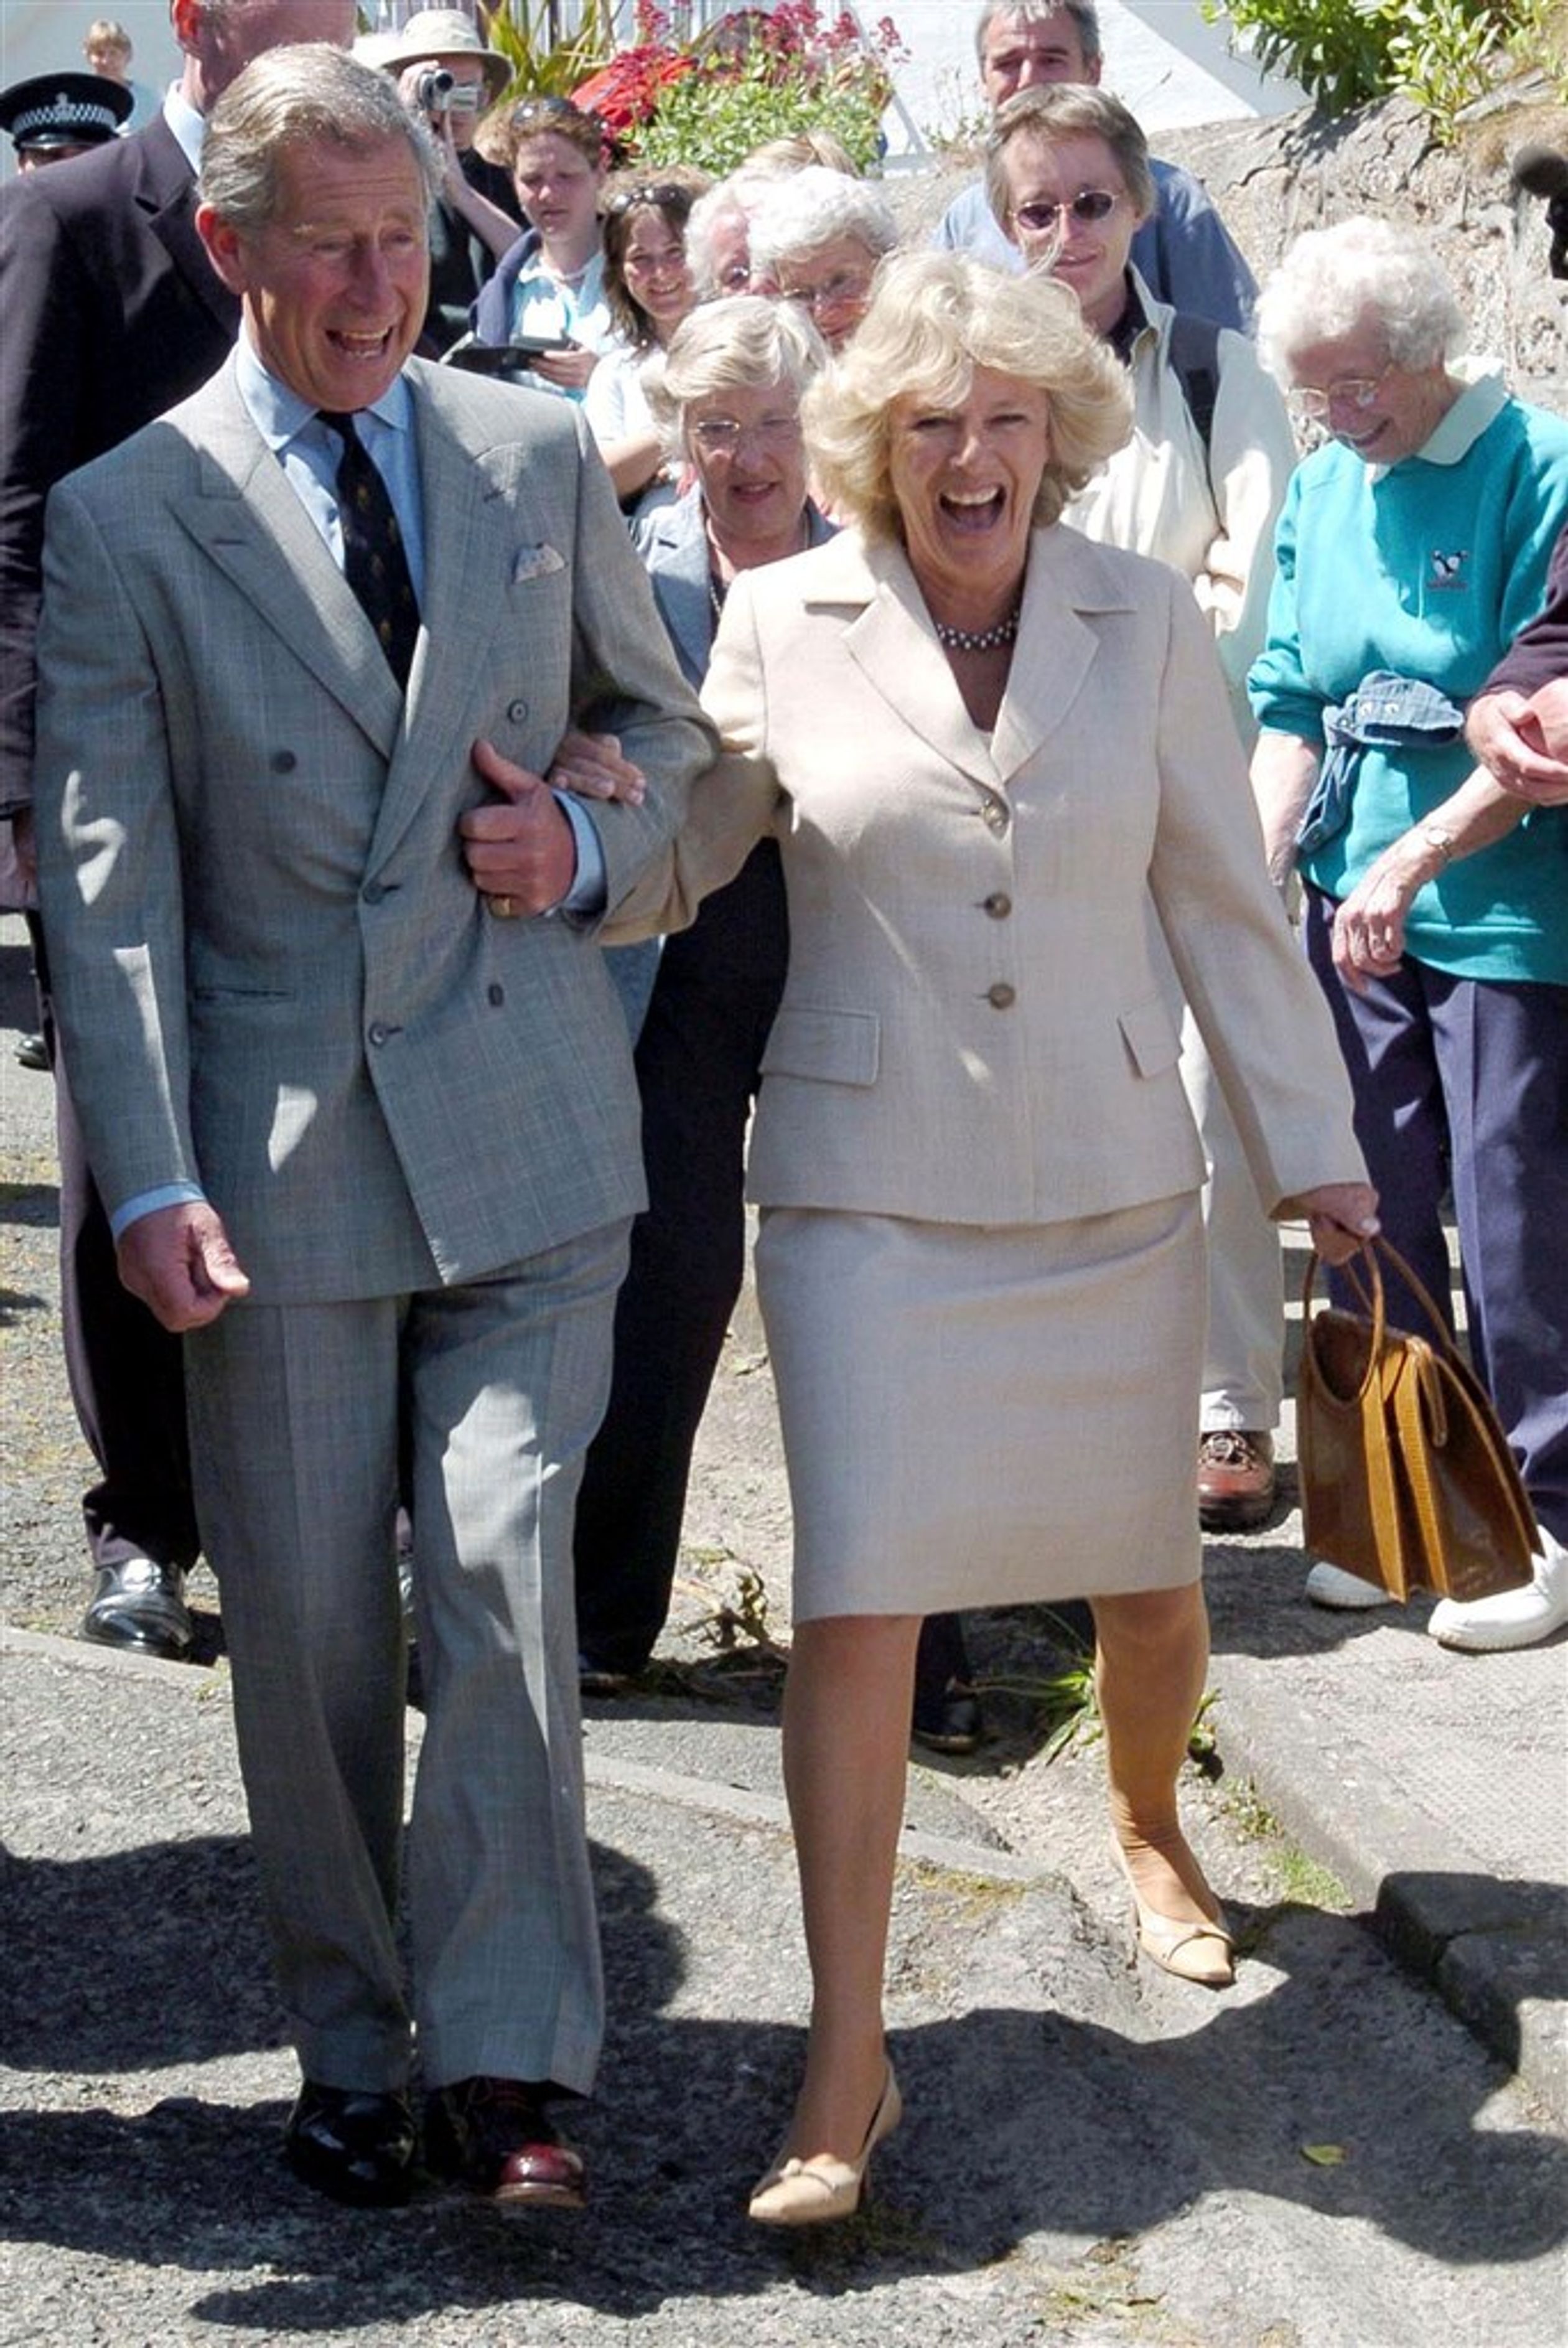 De Britse prins Charles en Camilla, hertogin van Cornwall, worden regelmatig lachend gespot. Deze